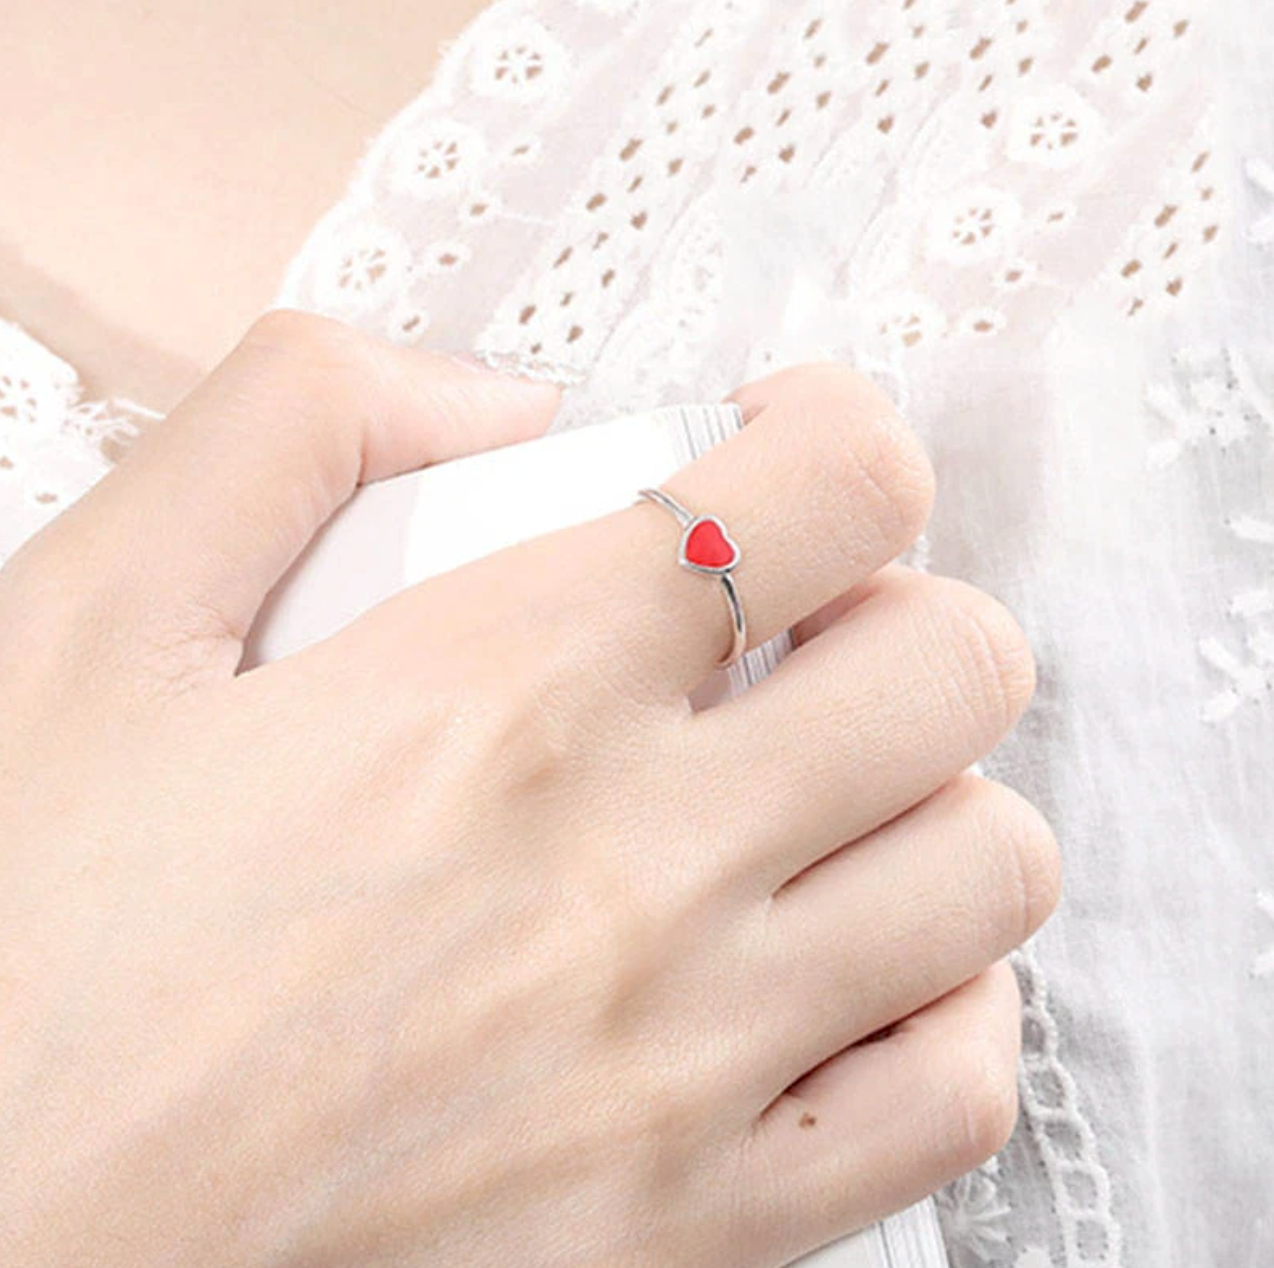 Exprimez votre amour avec notre bague ouverte petit coeur rouge. Cette bague élégante et romantique est conçue pour ressembler à un petit coeur rouge brillant sur votre doigt. La bague est ouverte, ce qui la rend ajustable pour s'adapter à différentes tailles de doigt.